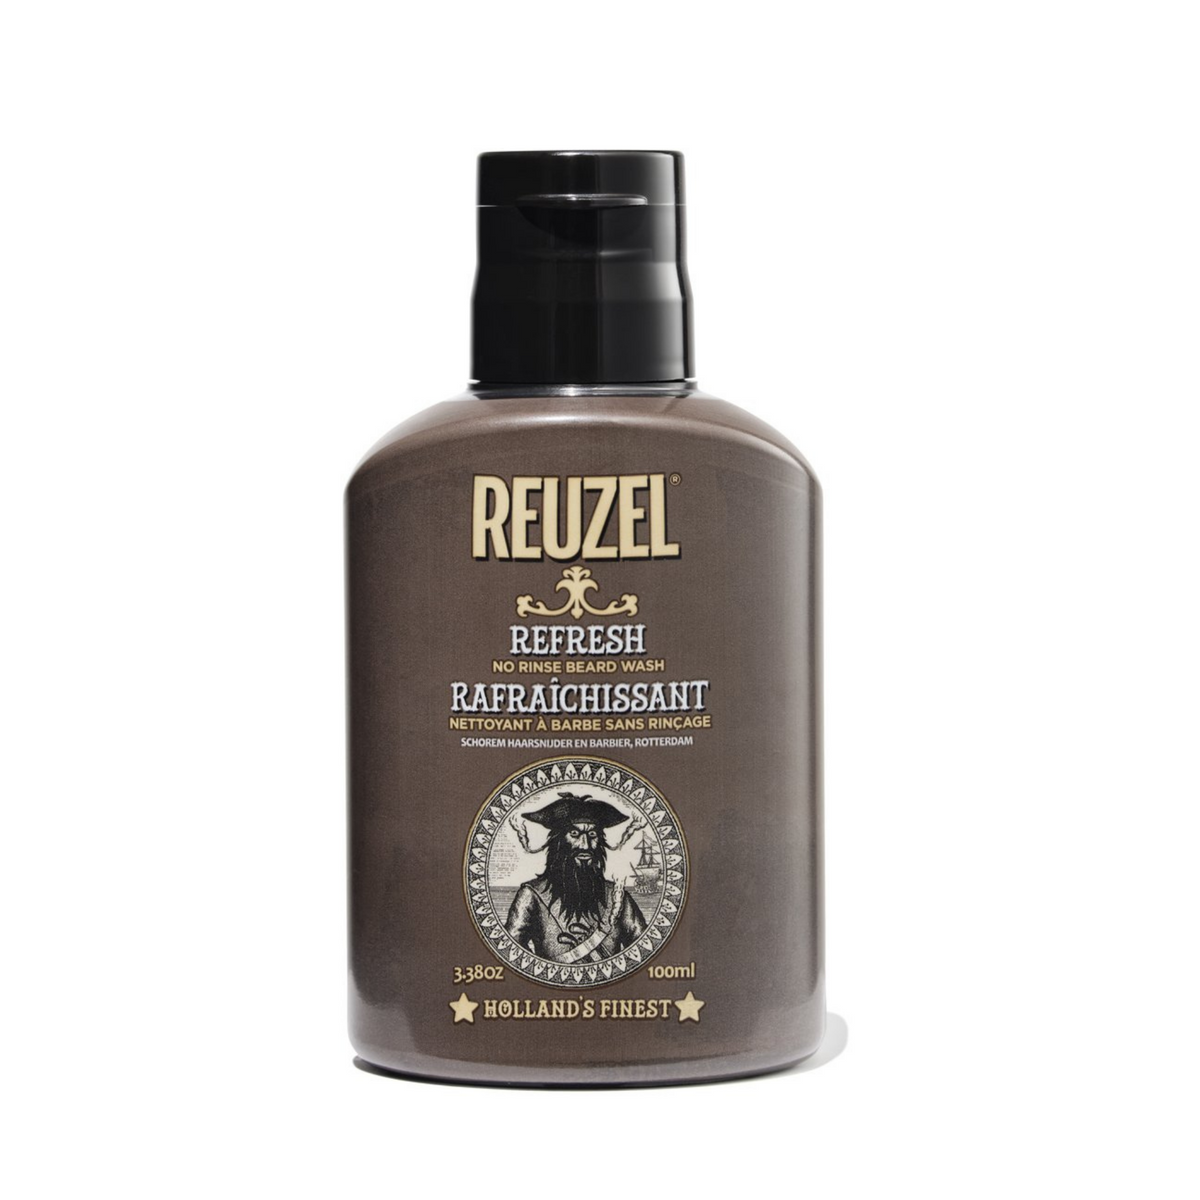 Primary image of Reuzel No Rinse Beard Wash